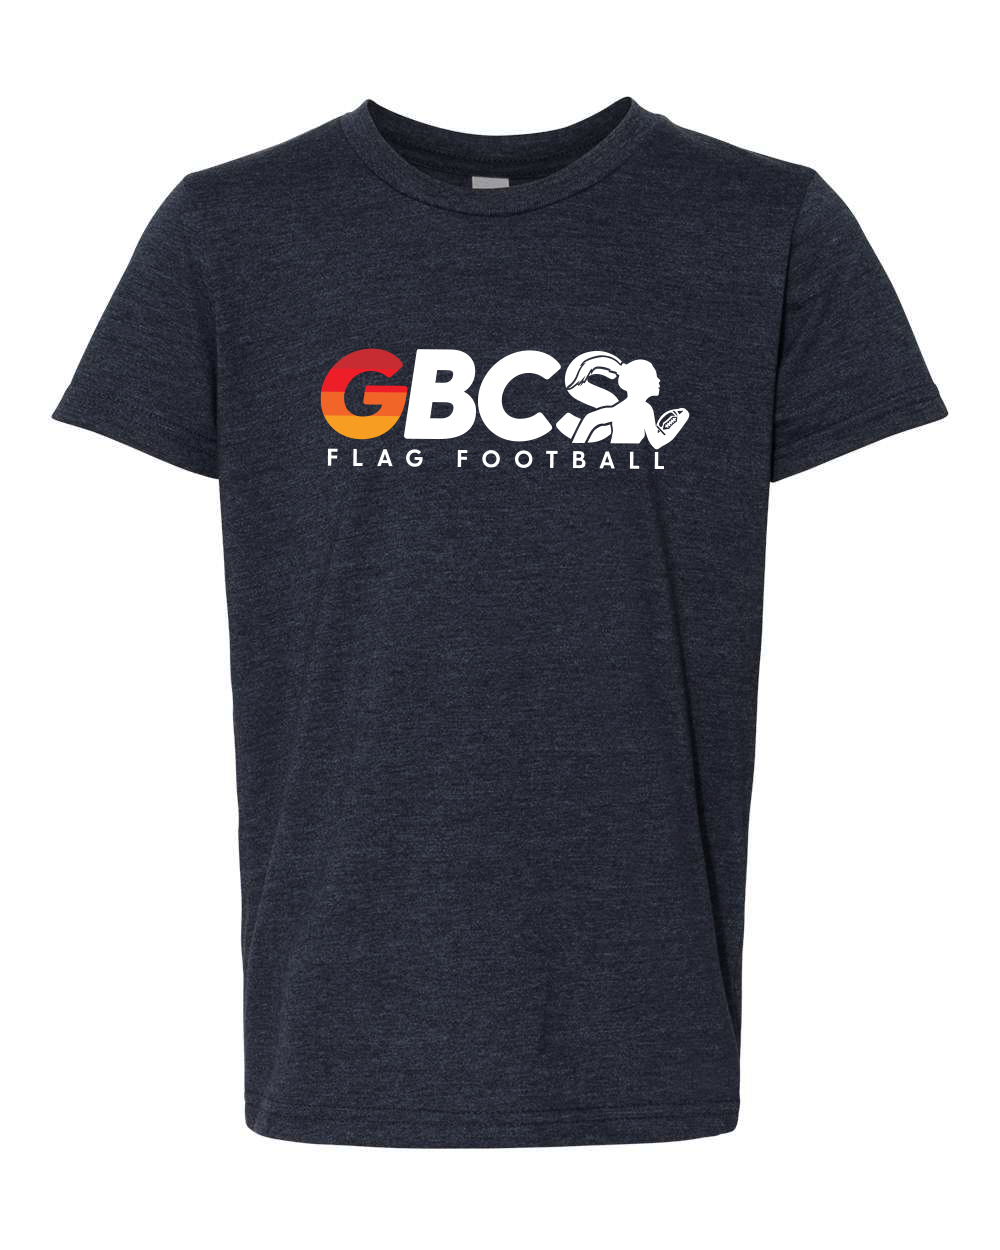 GBCS Youth T-Shirt